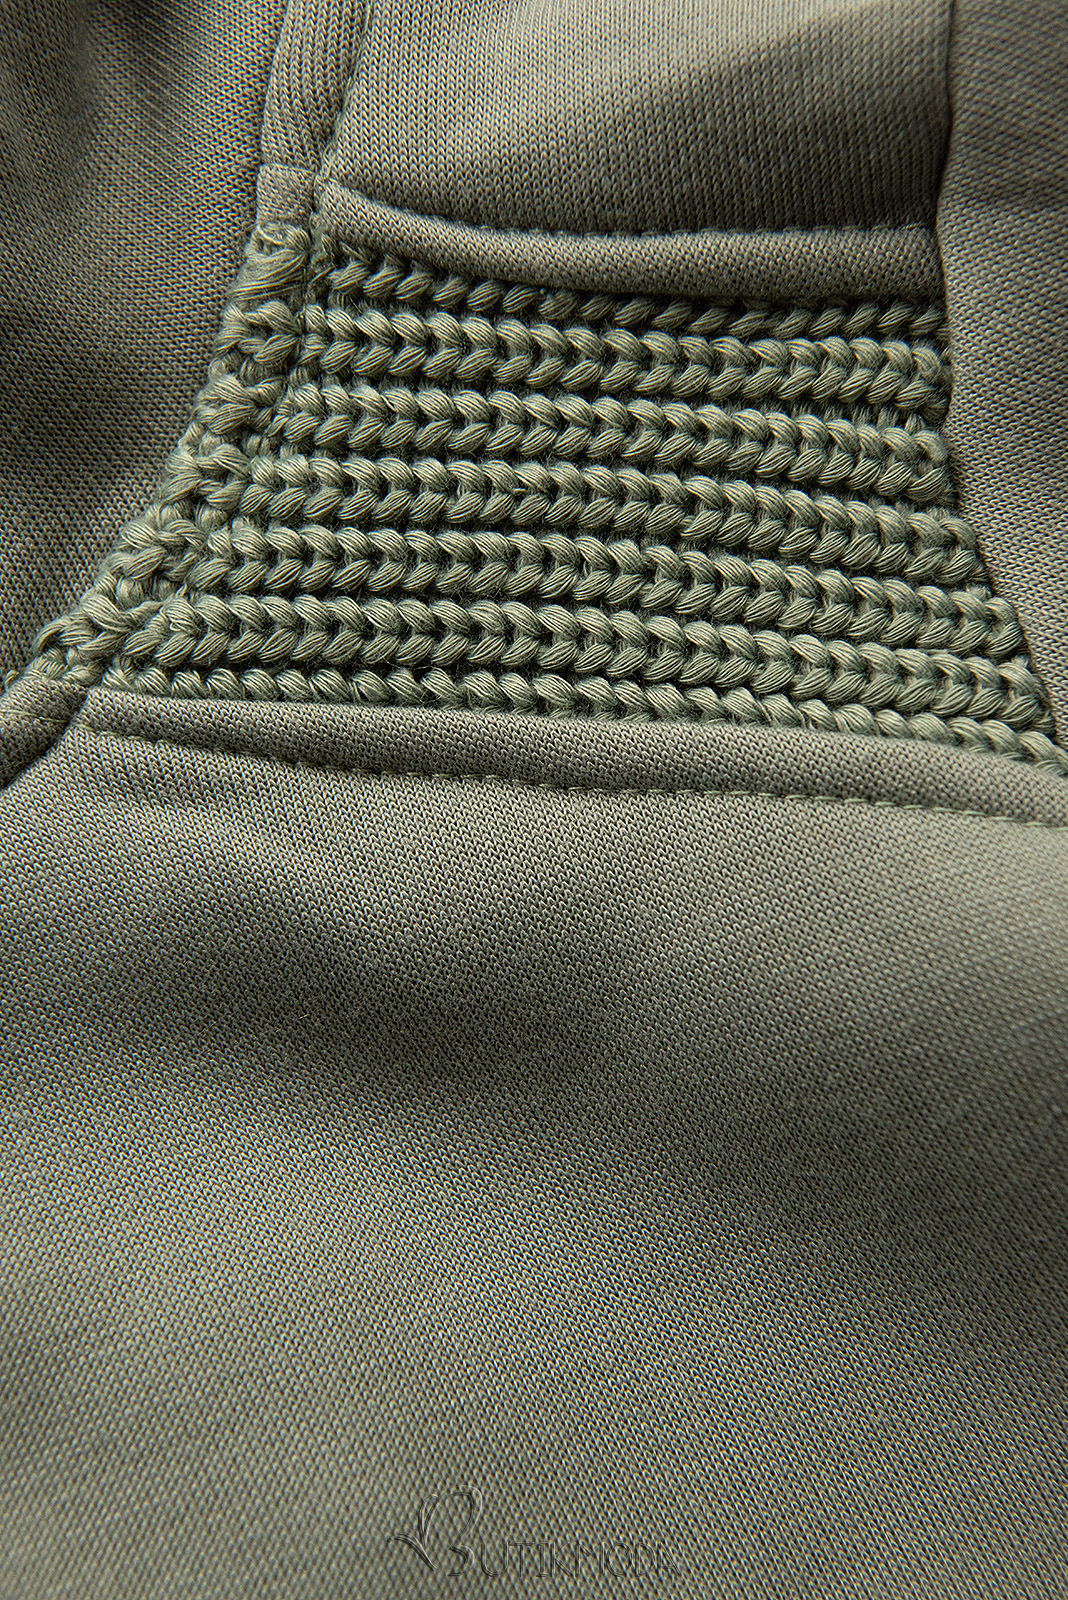 Hanorac verde măsliniu cu tricotaj decorativ